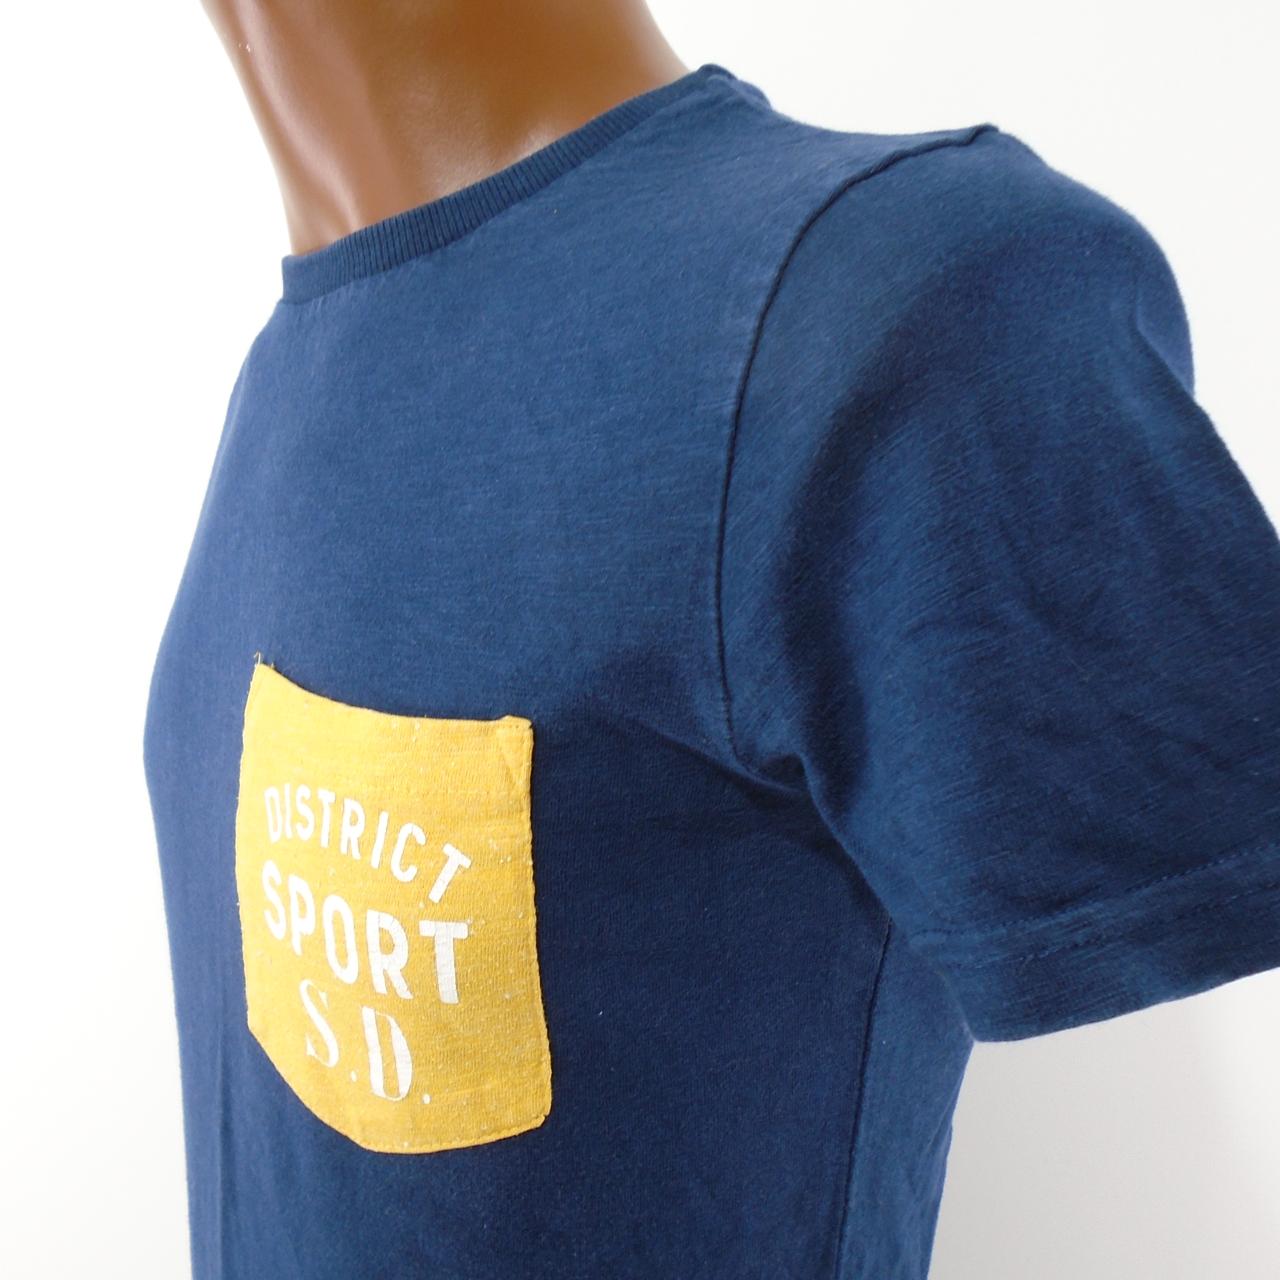 T-shirt Homme Superdry.  Bleu foncé.  S. Utilisé.  Bien